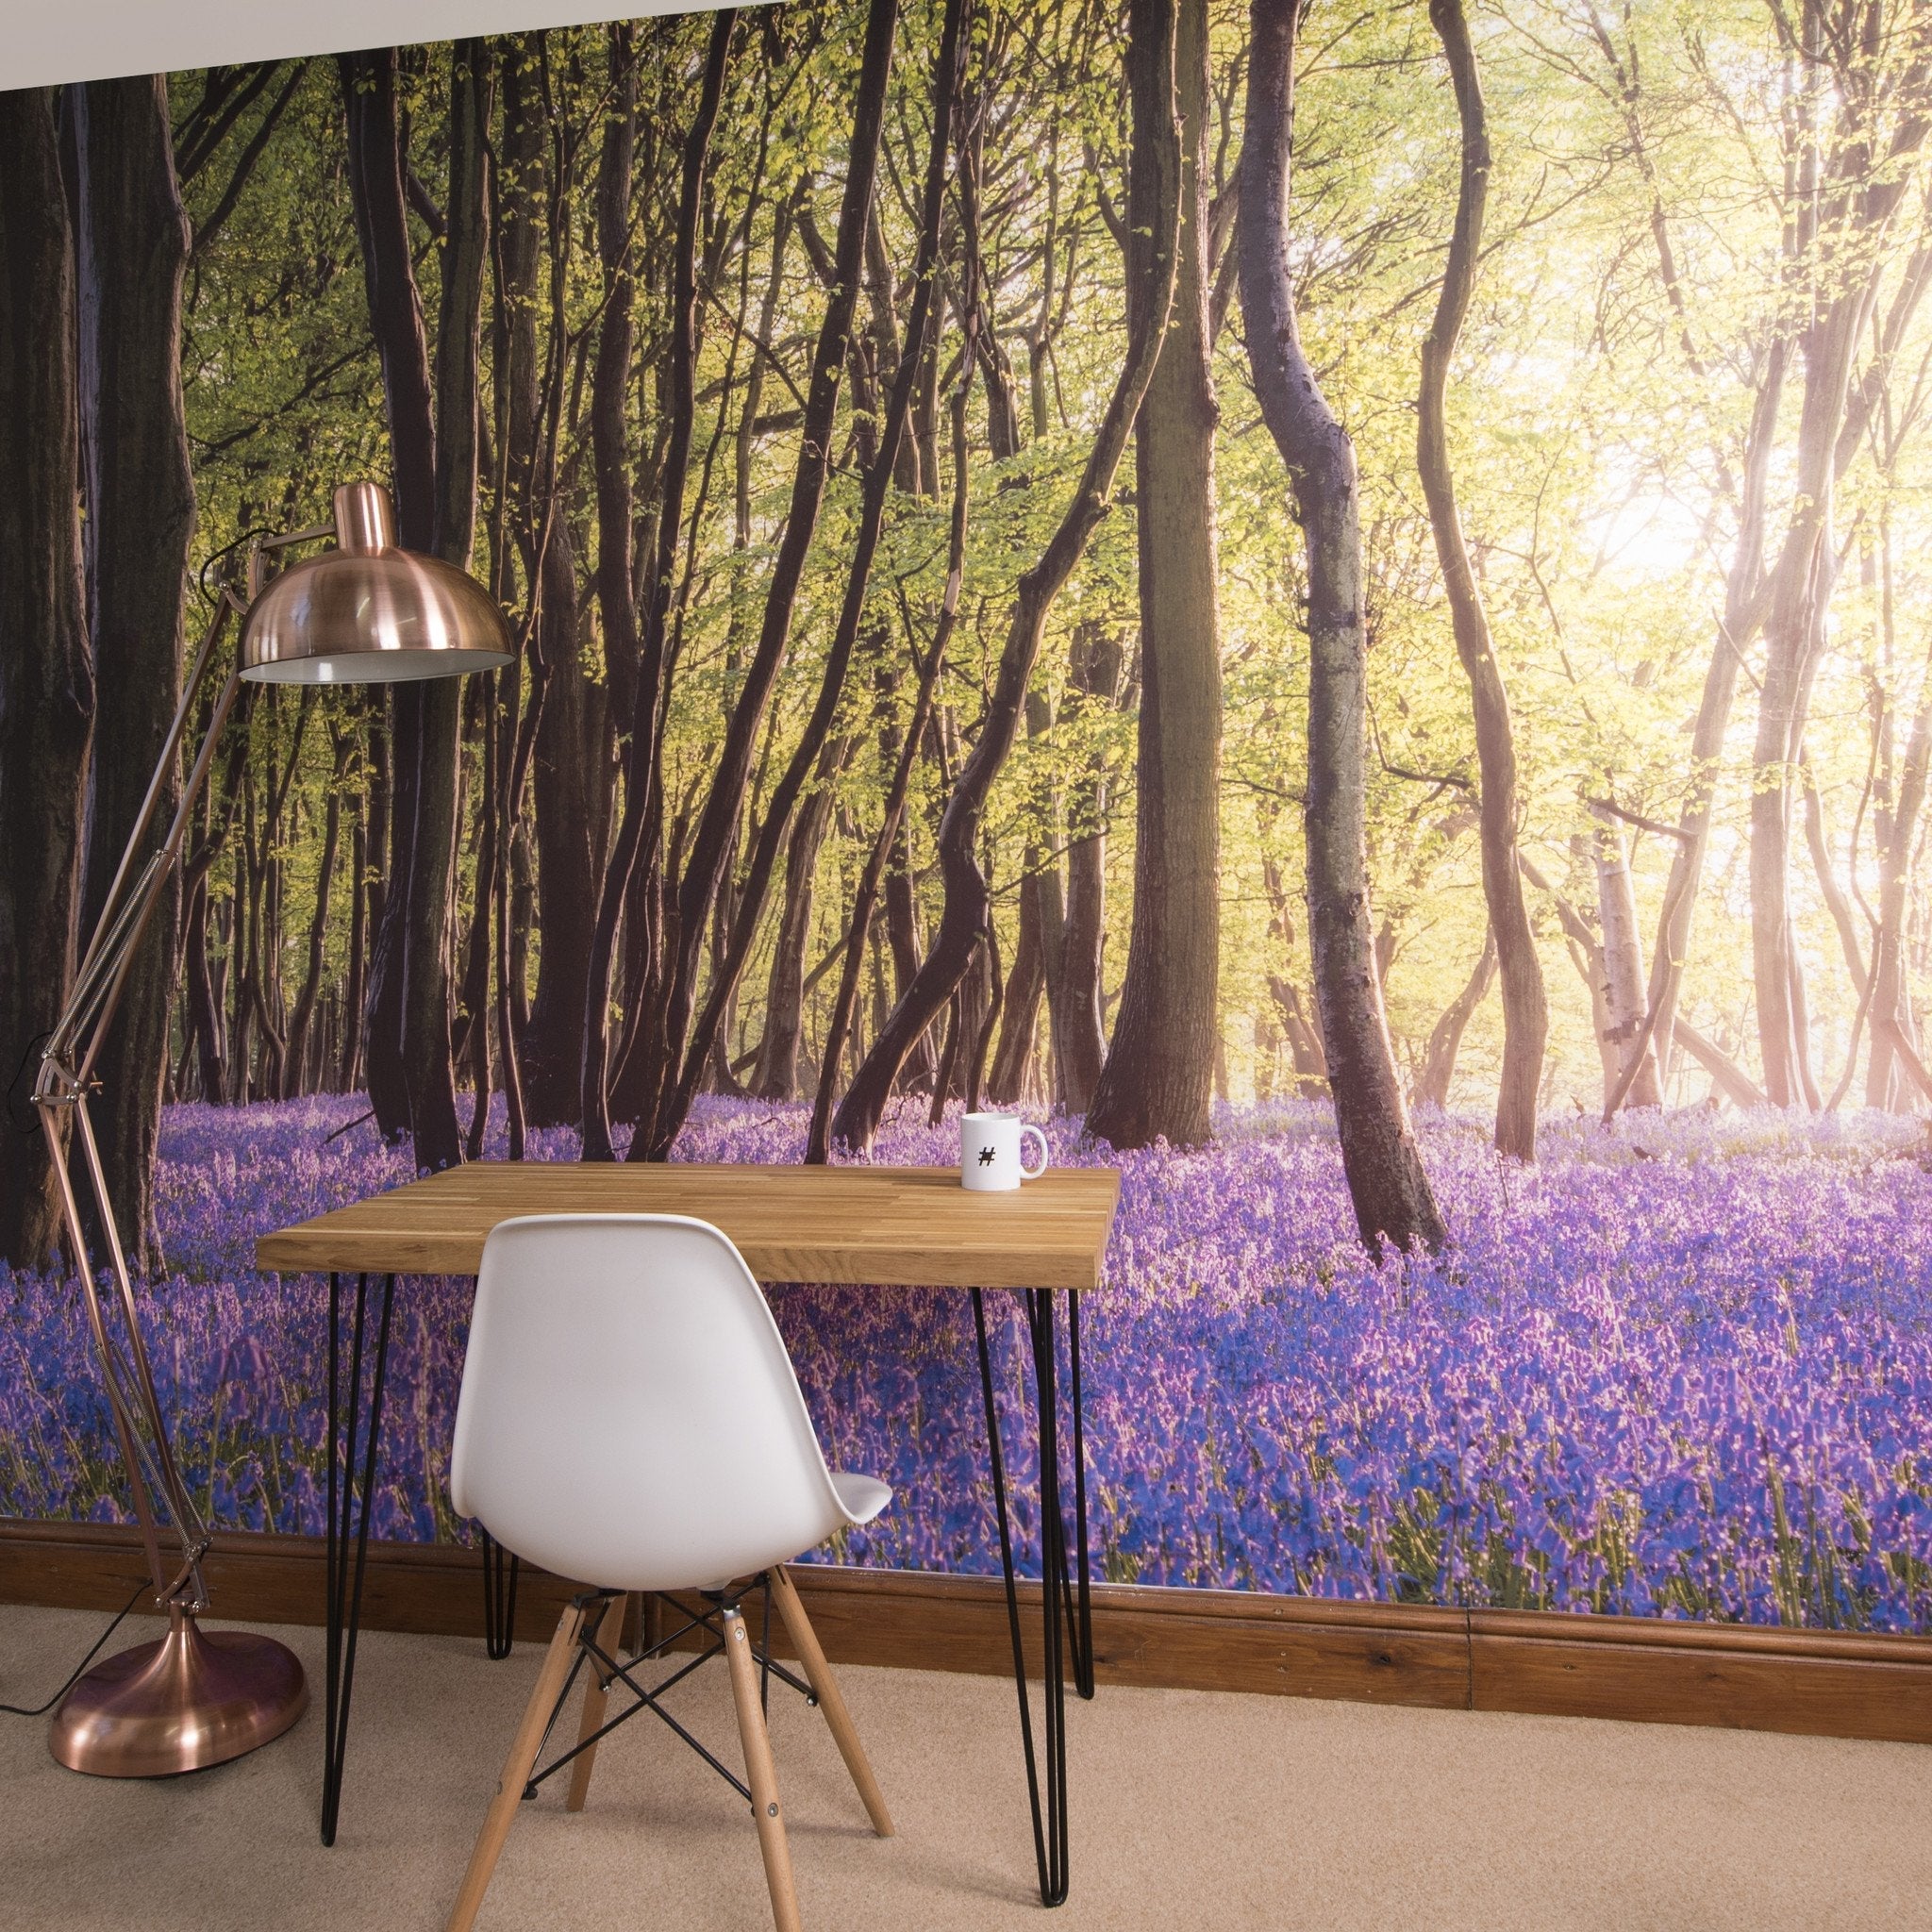 Bluebell Woods Self Adhesive Wallpaper Mural - Oakdene Designs - 2